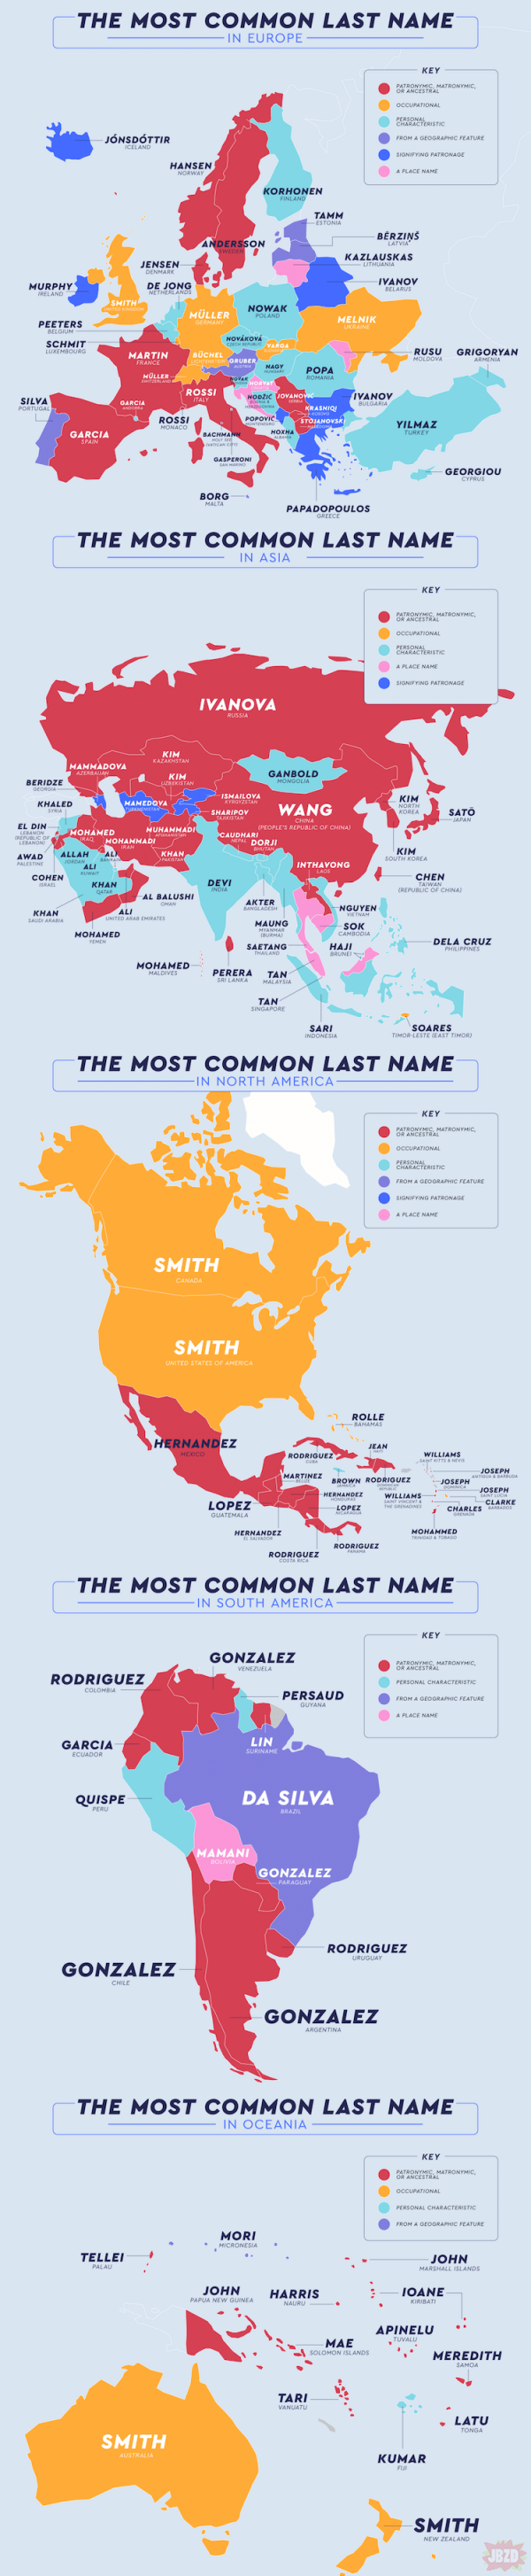 Najpopularniejsze nazwiska na świecie.